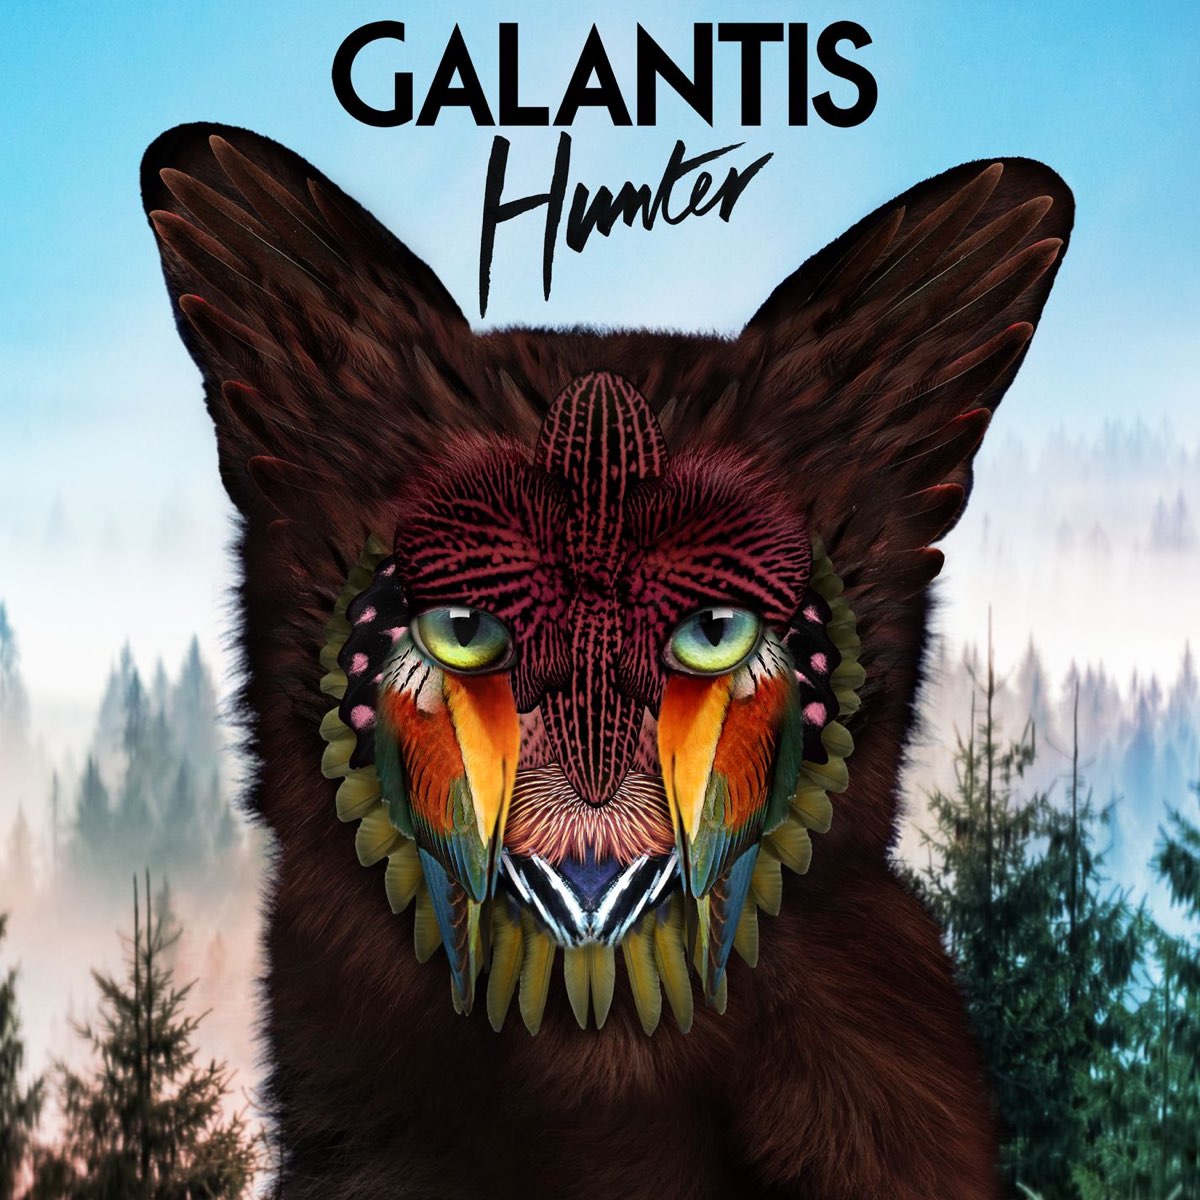 Galantis Hunter cover artwork